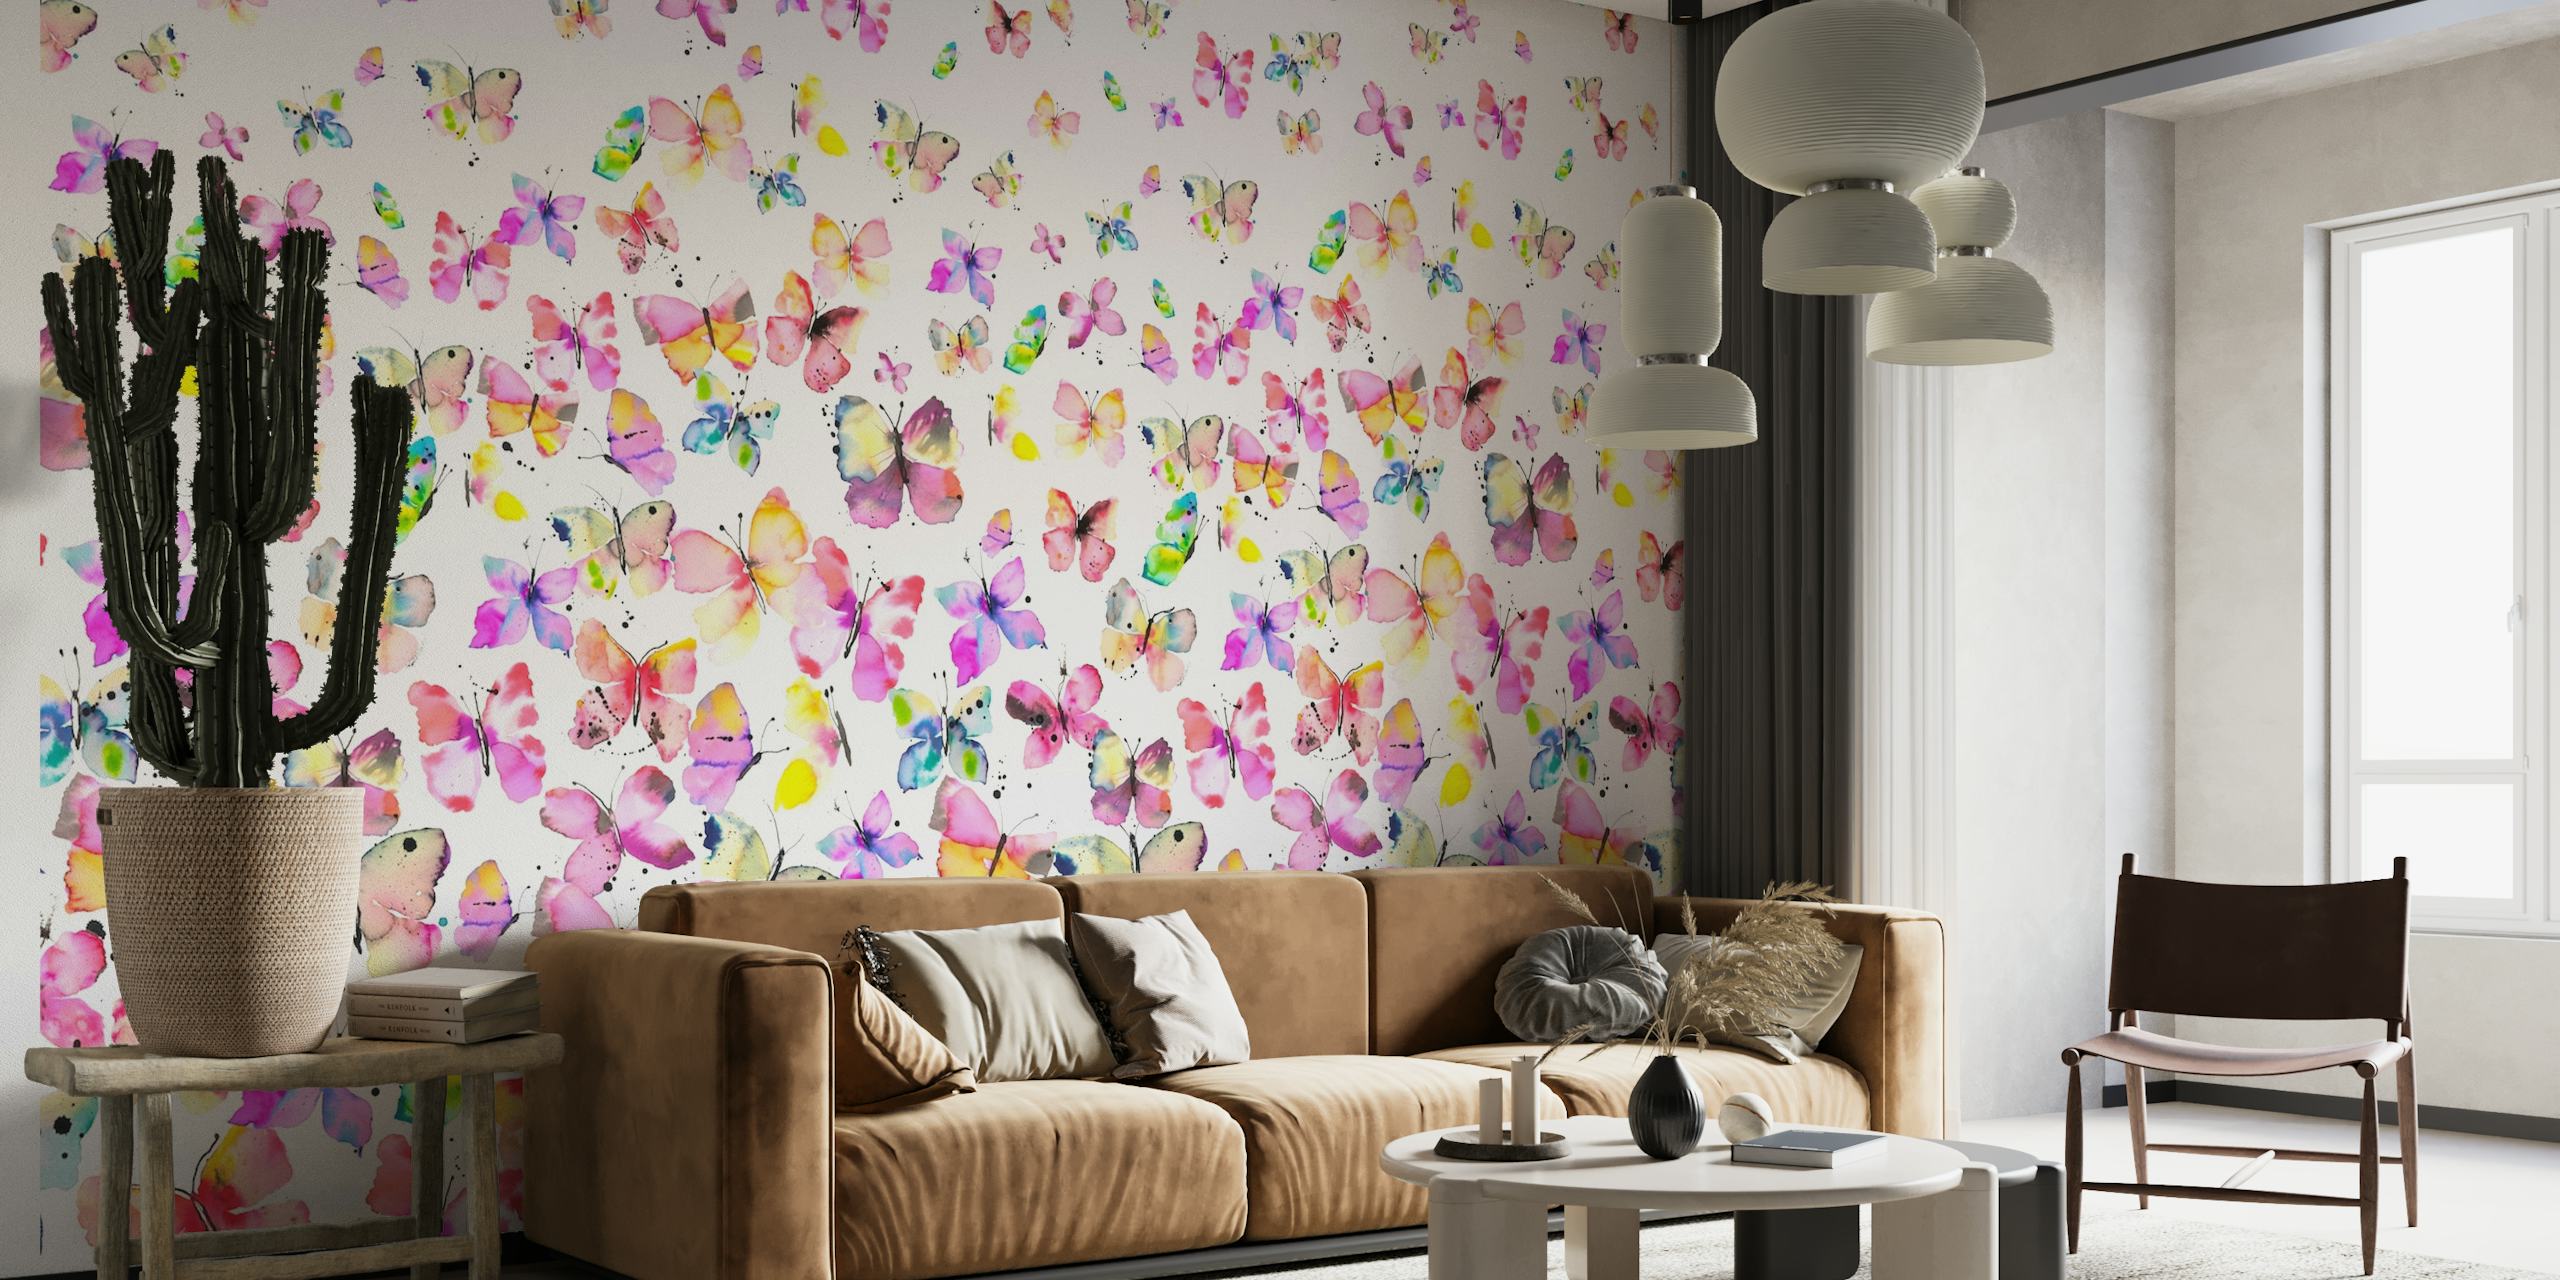 Borboletas aquarela coloridas em um padrão degradado em um mural de parede